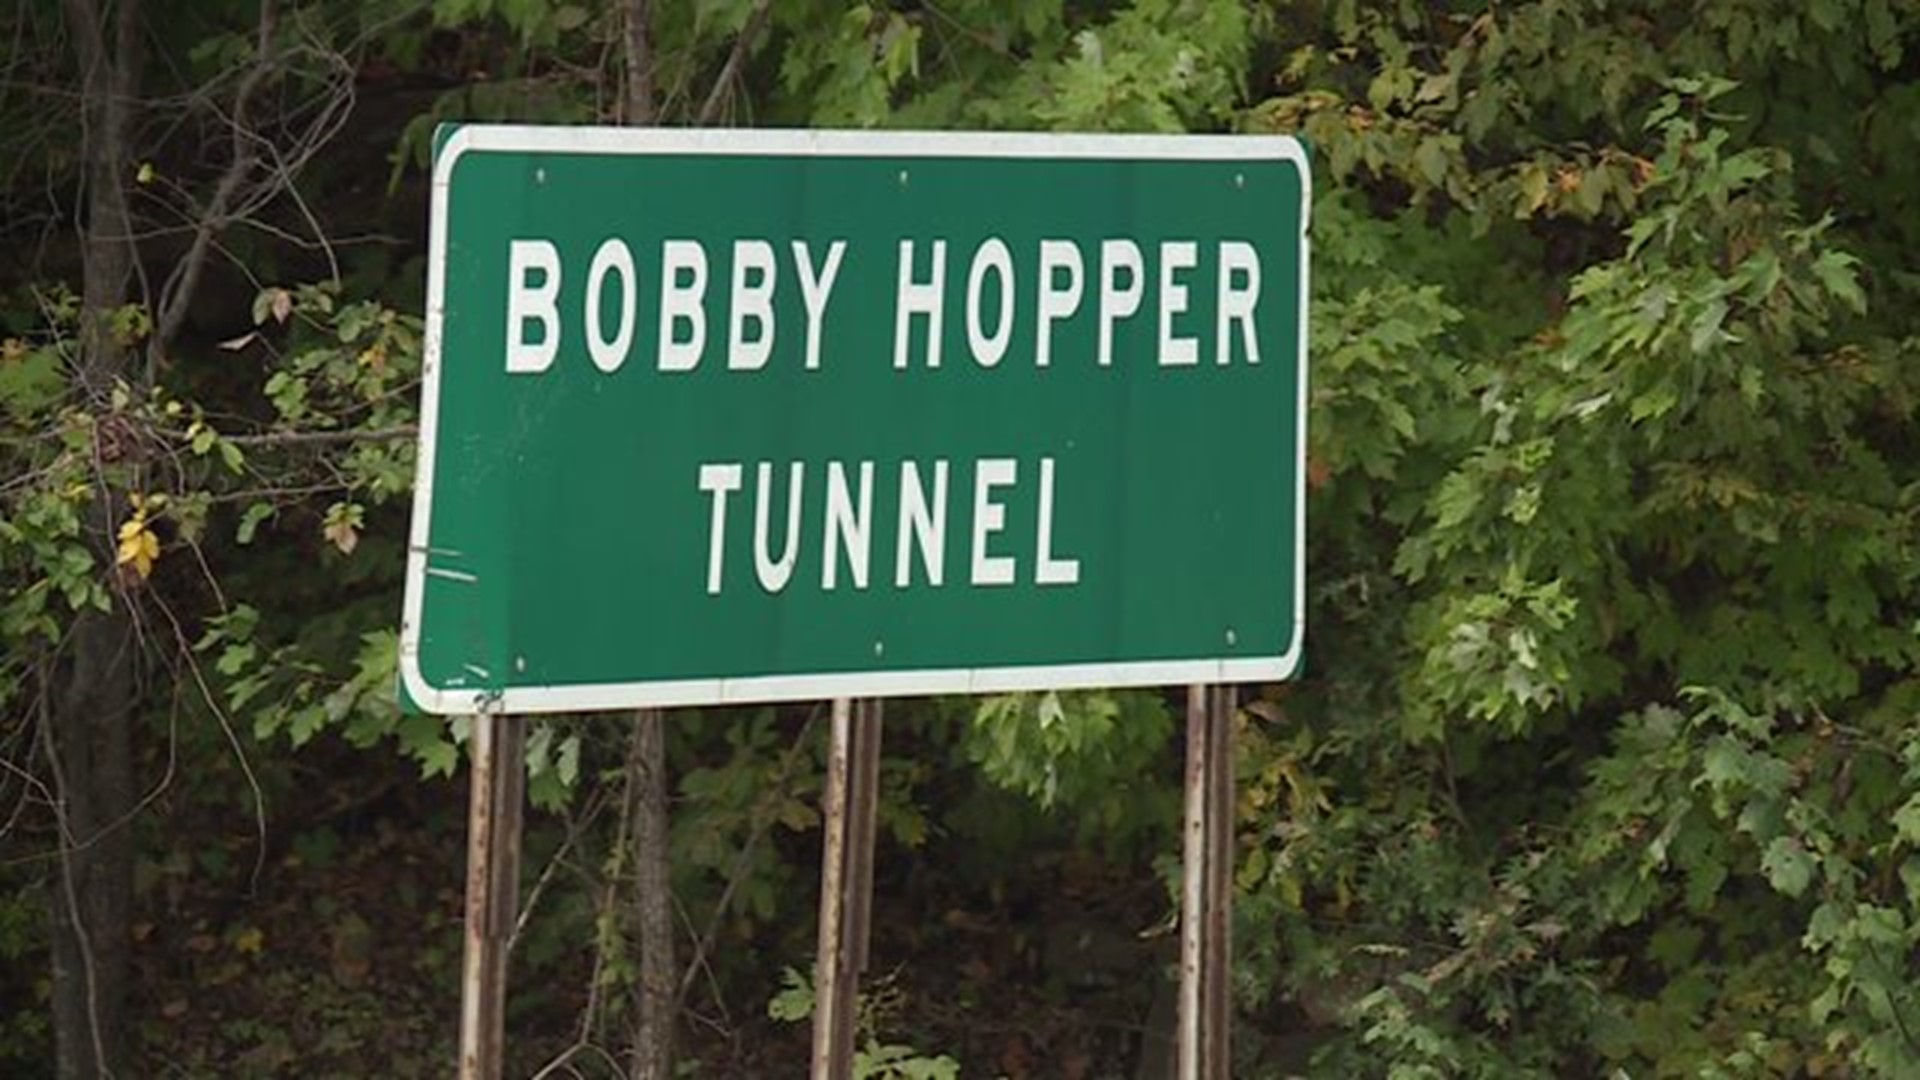 Bobby Hopper